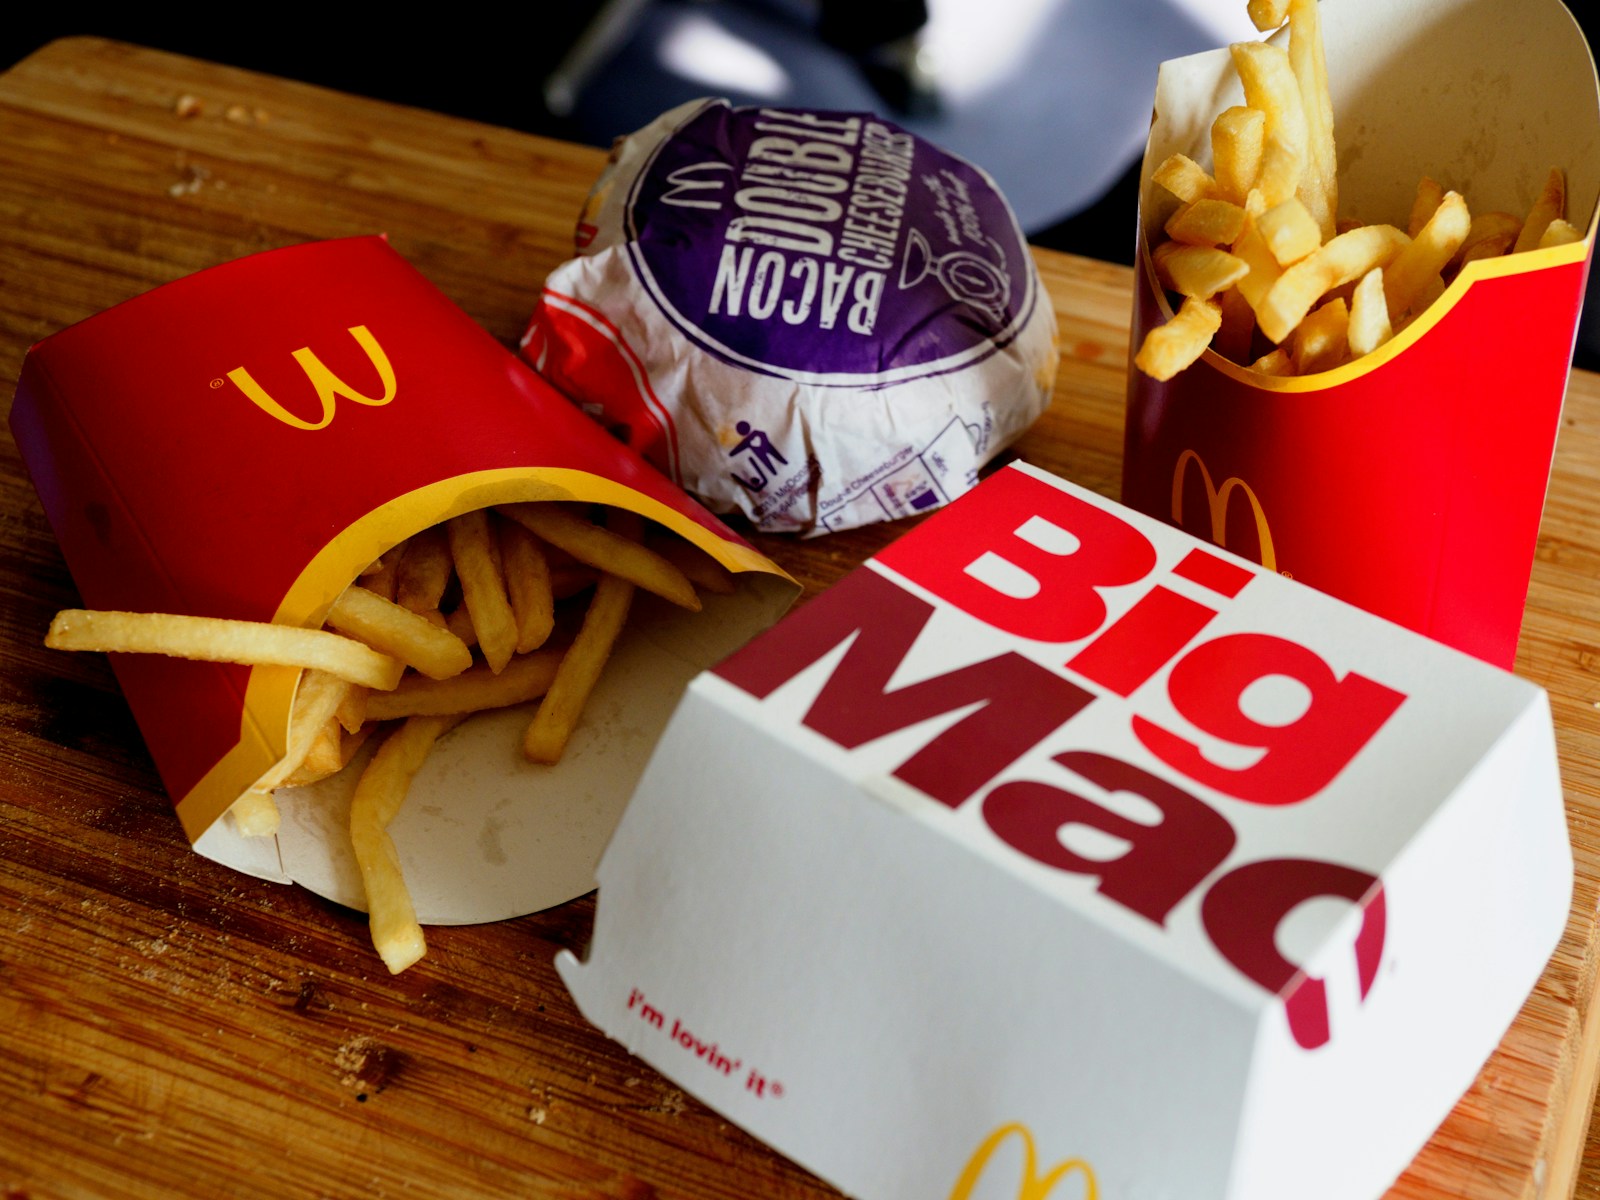 Ennyi volt: A háború miatt a McDonald’s visszaveszi mind a 225 izraeli éttermét – Neokohn